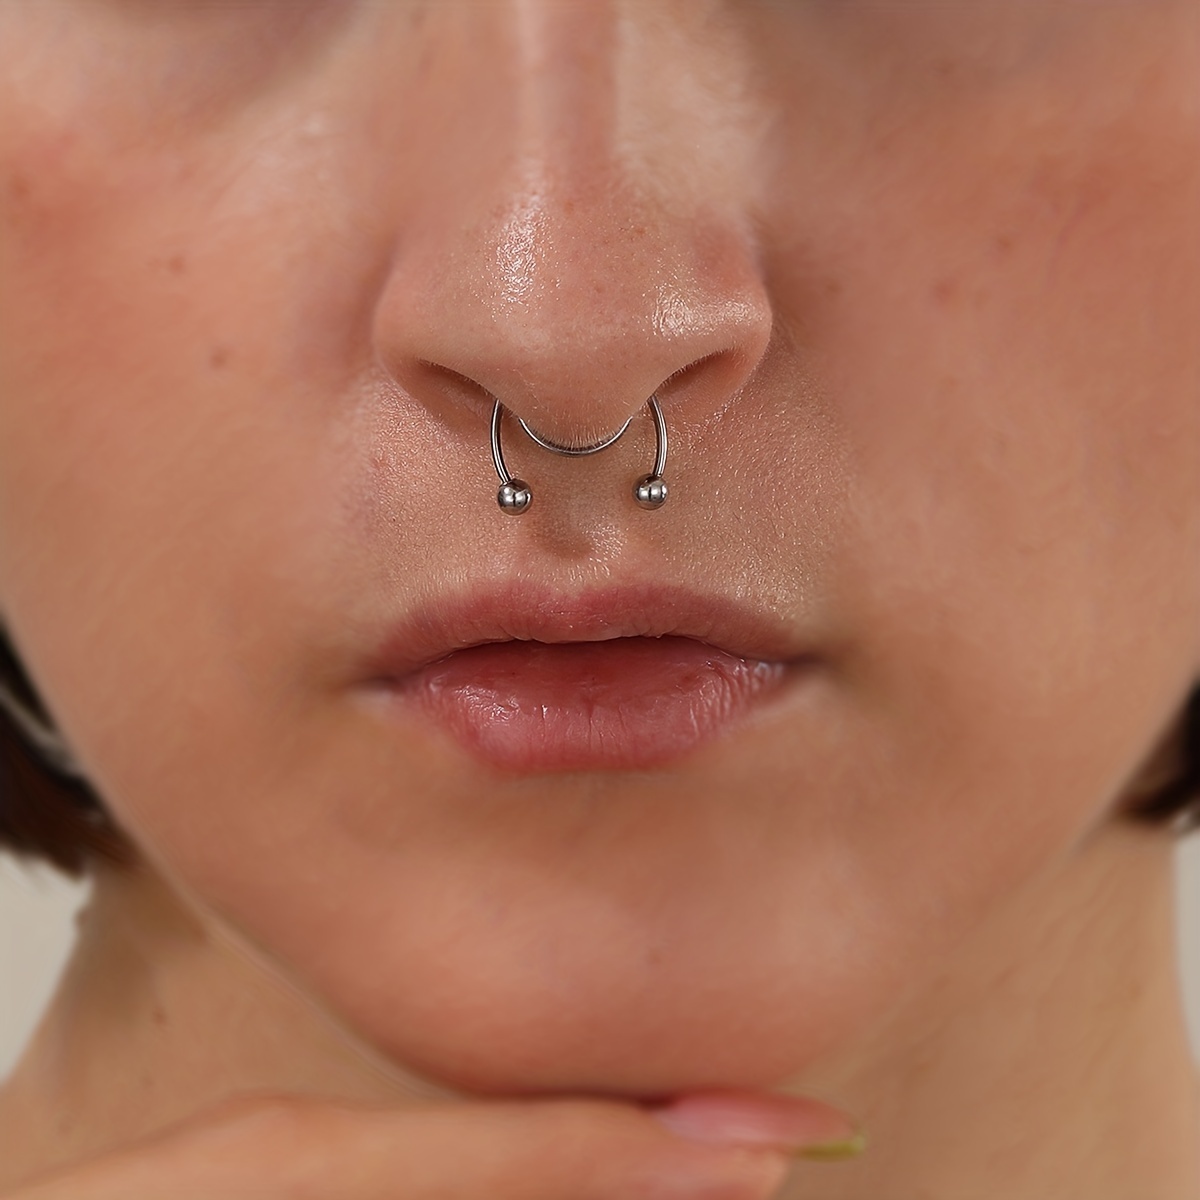 Fake nose piercing price - with rhinestones, ring